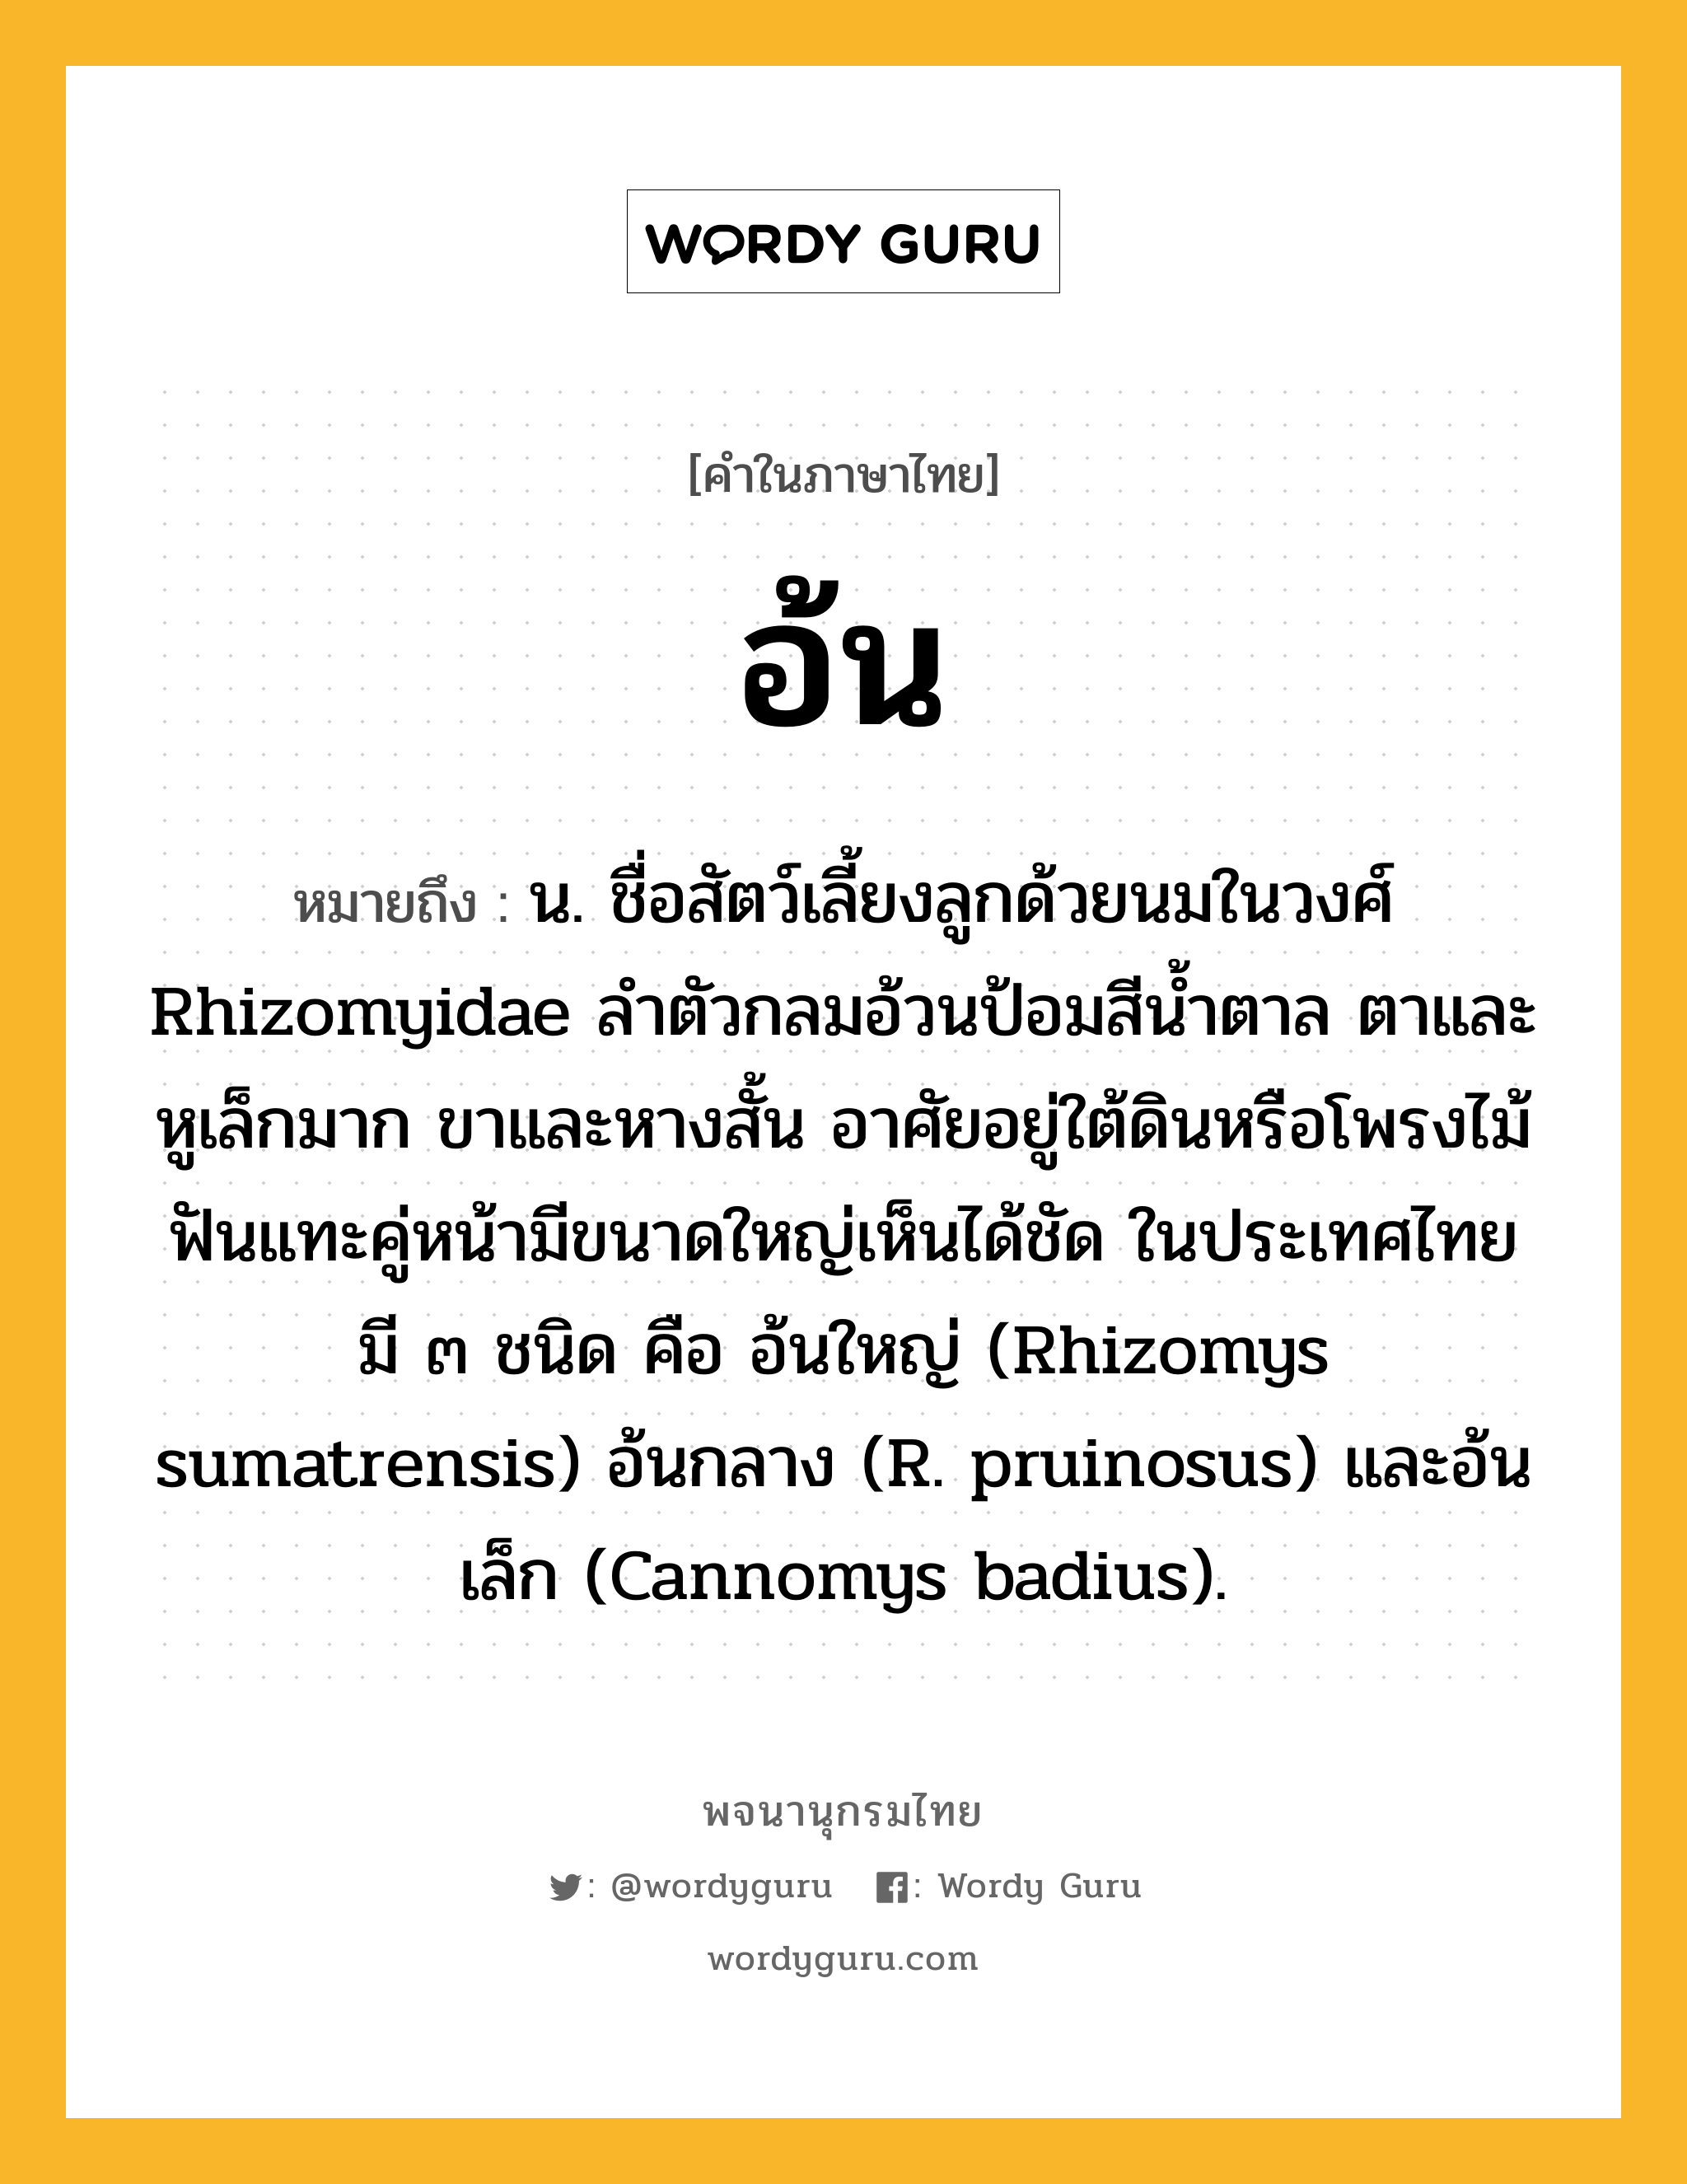 อ้น หมายถึงอะไร?, คำในภาษาไทย อ้น หมายถึง น. ชื่อสัตว์เลี้ยงลูกด้วยนมในวงศ์ Rhizomyidae ลําตัวกลมอ้วนป้อมสีนํ้าตาล ตาและหูเล็กมาก ขาและหางสั้น อาศัยอยู่ใต้ดินหรือโพรงไม้ ฟันแทะคู่หน้ามีขนาดใหญ่เห็นได้ชัด ในประเทศไทยมี ๓ ชนิด คือ อ้นใหญ่ (Rhizomys sumatrensis) อ้นกลาง (R. pruinosus) และอ้นเล็ก (Cannomys badius).